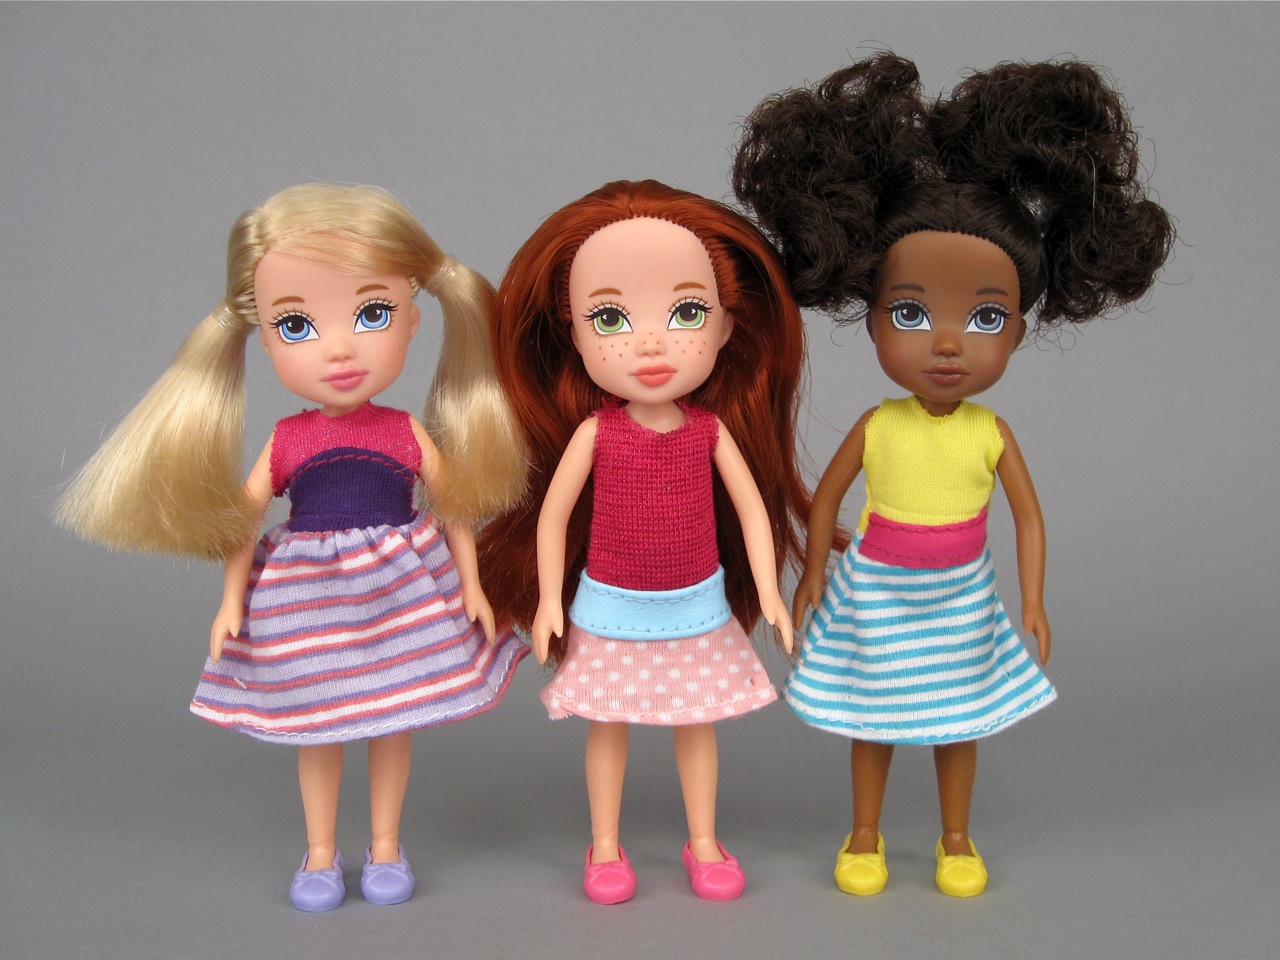 Moxie Girlz mini dolls